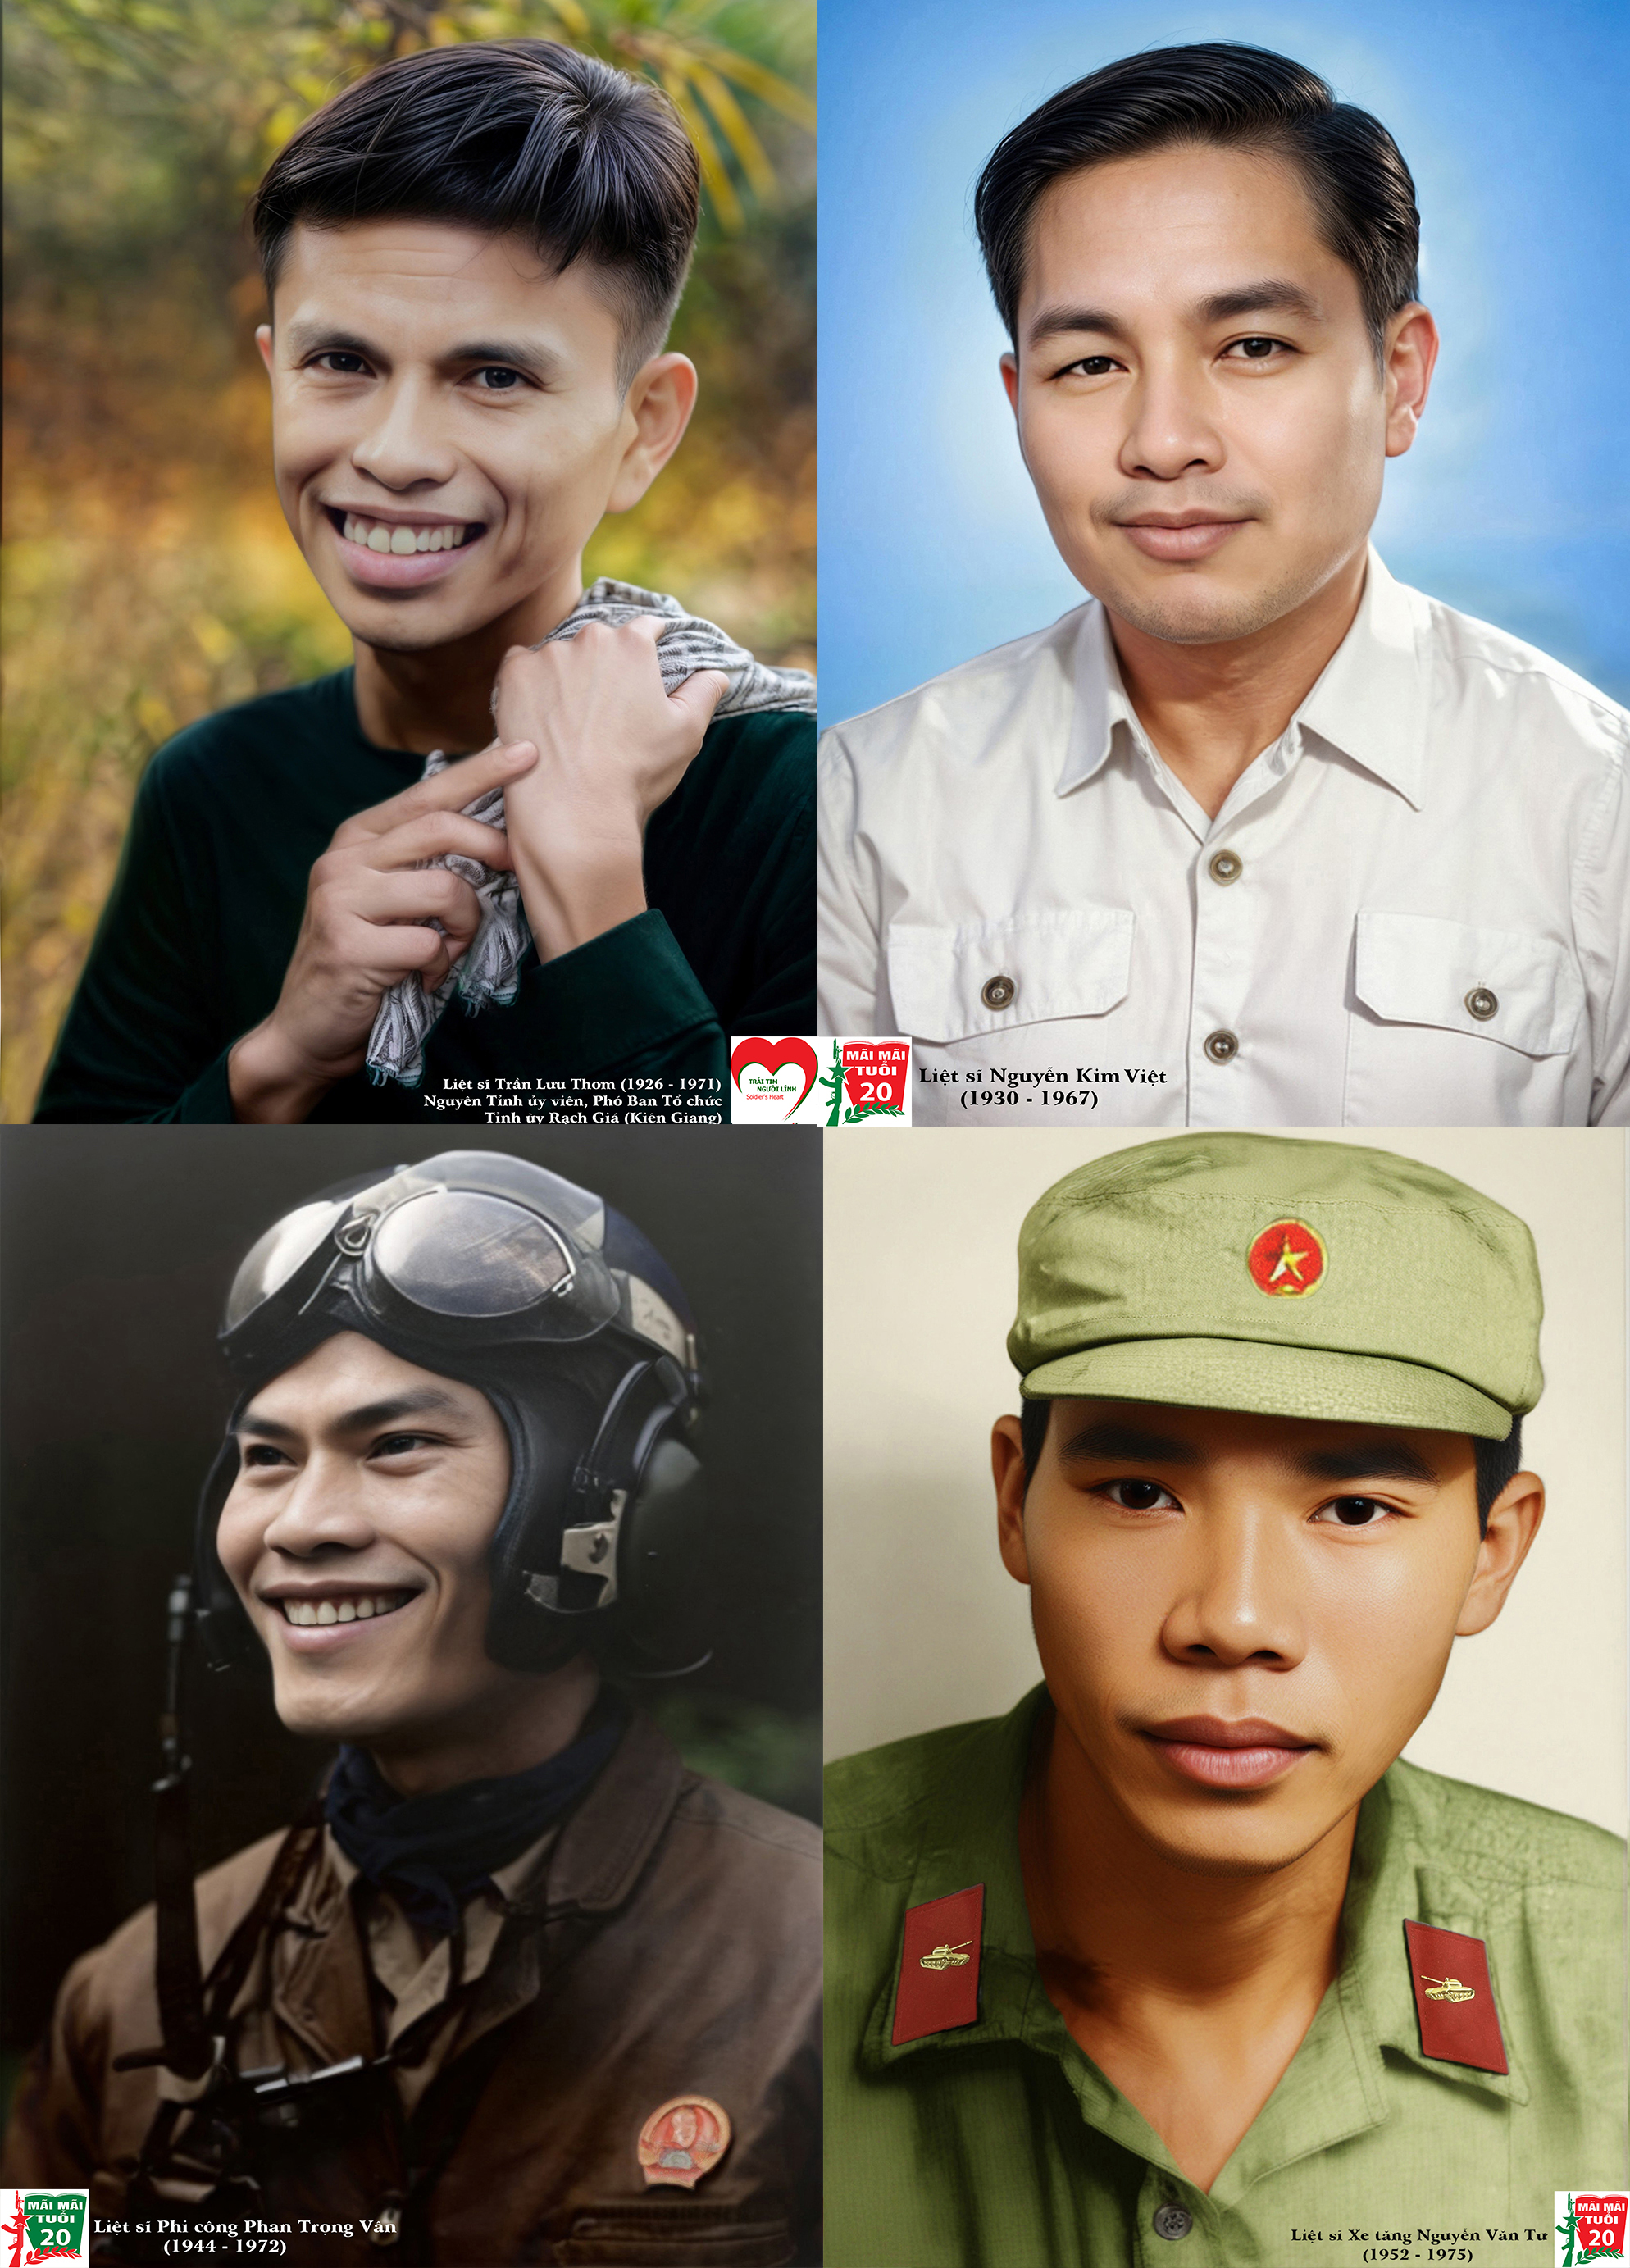 Tiếp nhận “Hồ sơ chứng tích chiến tranh Việt Nam” và ra mắt tự truyện “Mãi vẫn là người lính”- Ảnh 2.